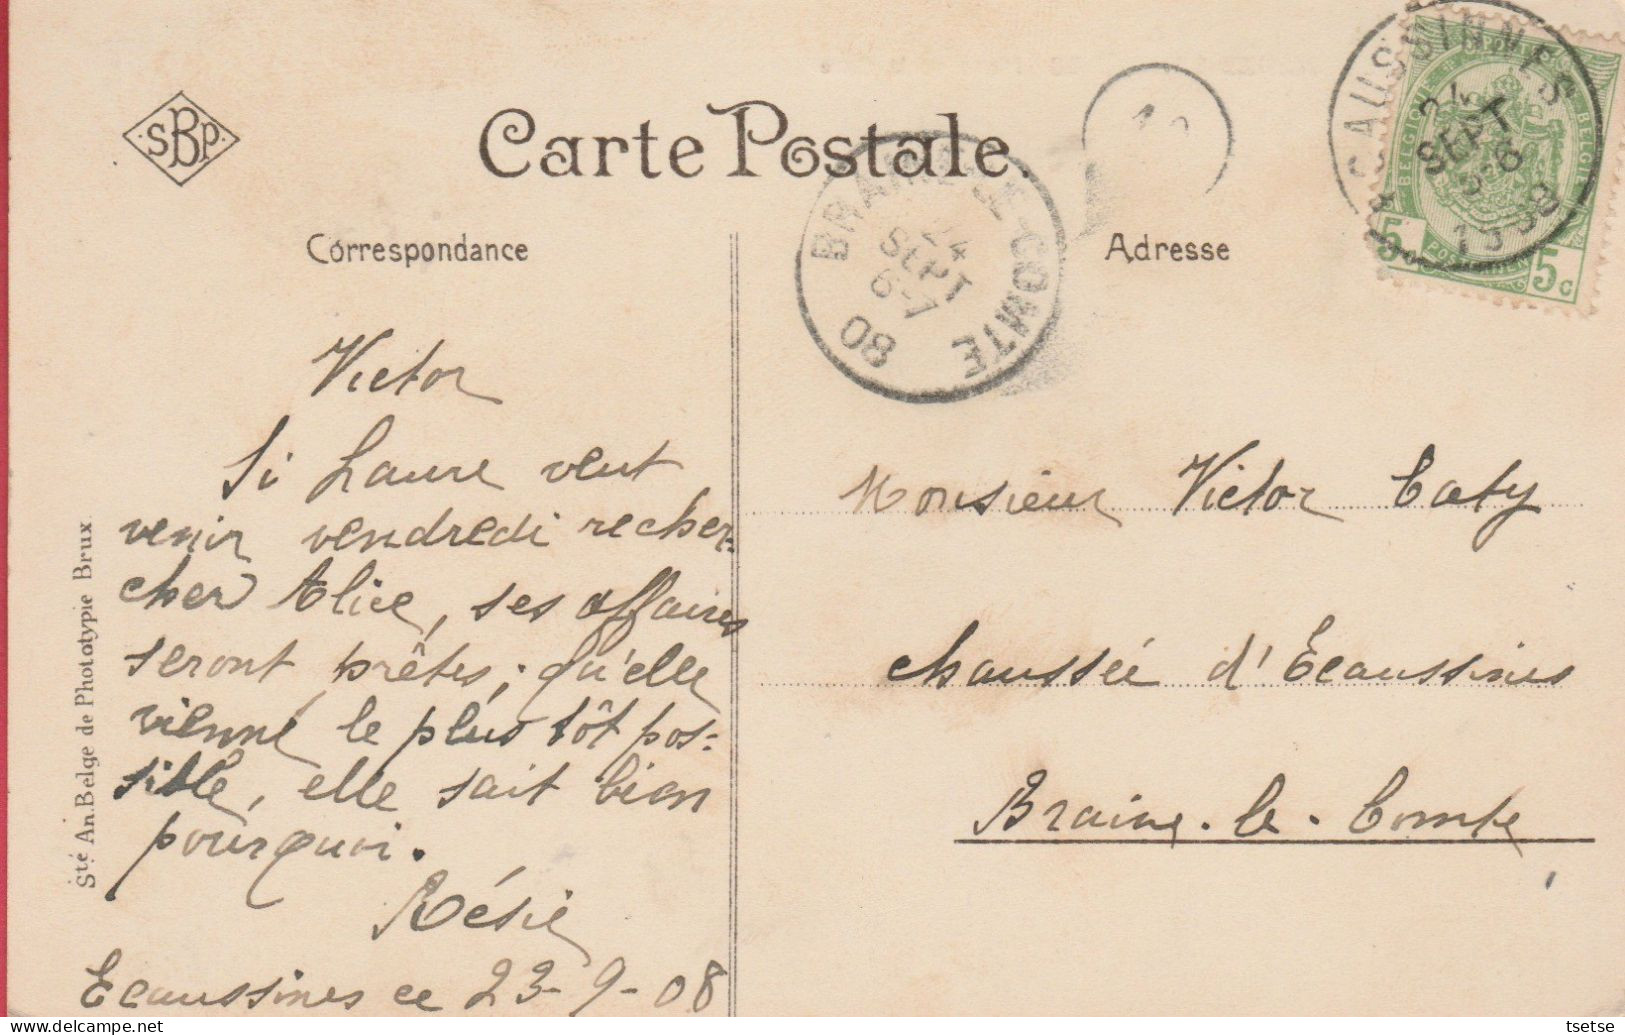 Ecaussines-Carrières - Place de la Gare - 1908 / S.B.P. ( voir verso )